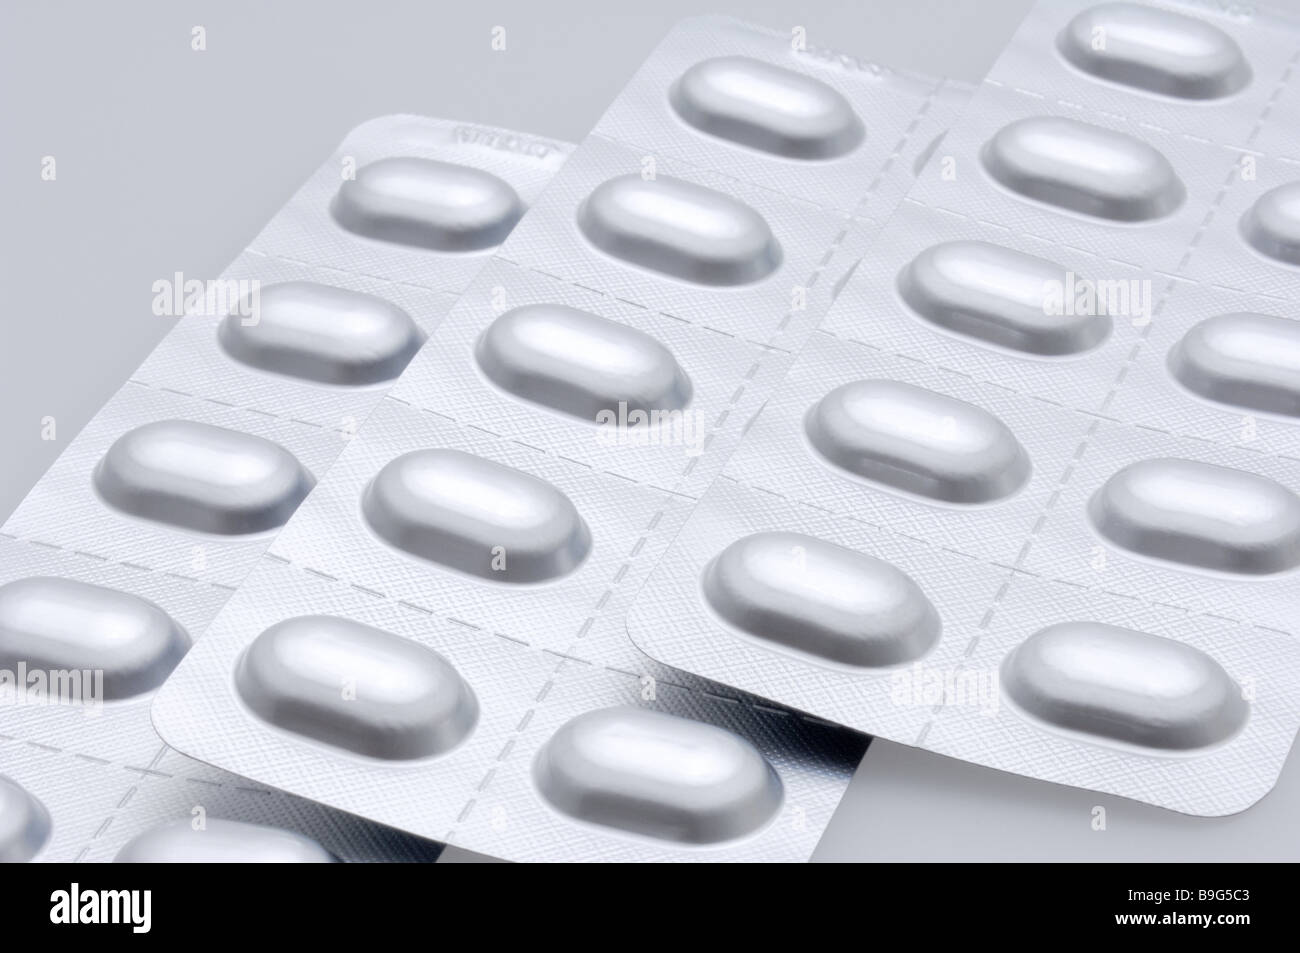 Pillole di farmaci in blister dettaglio confezione blister